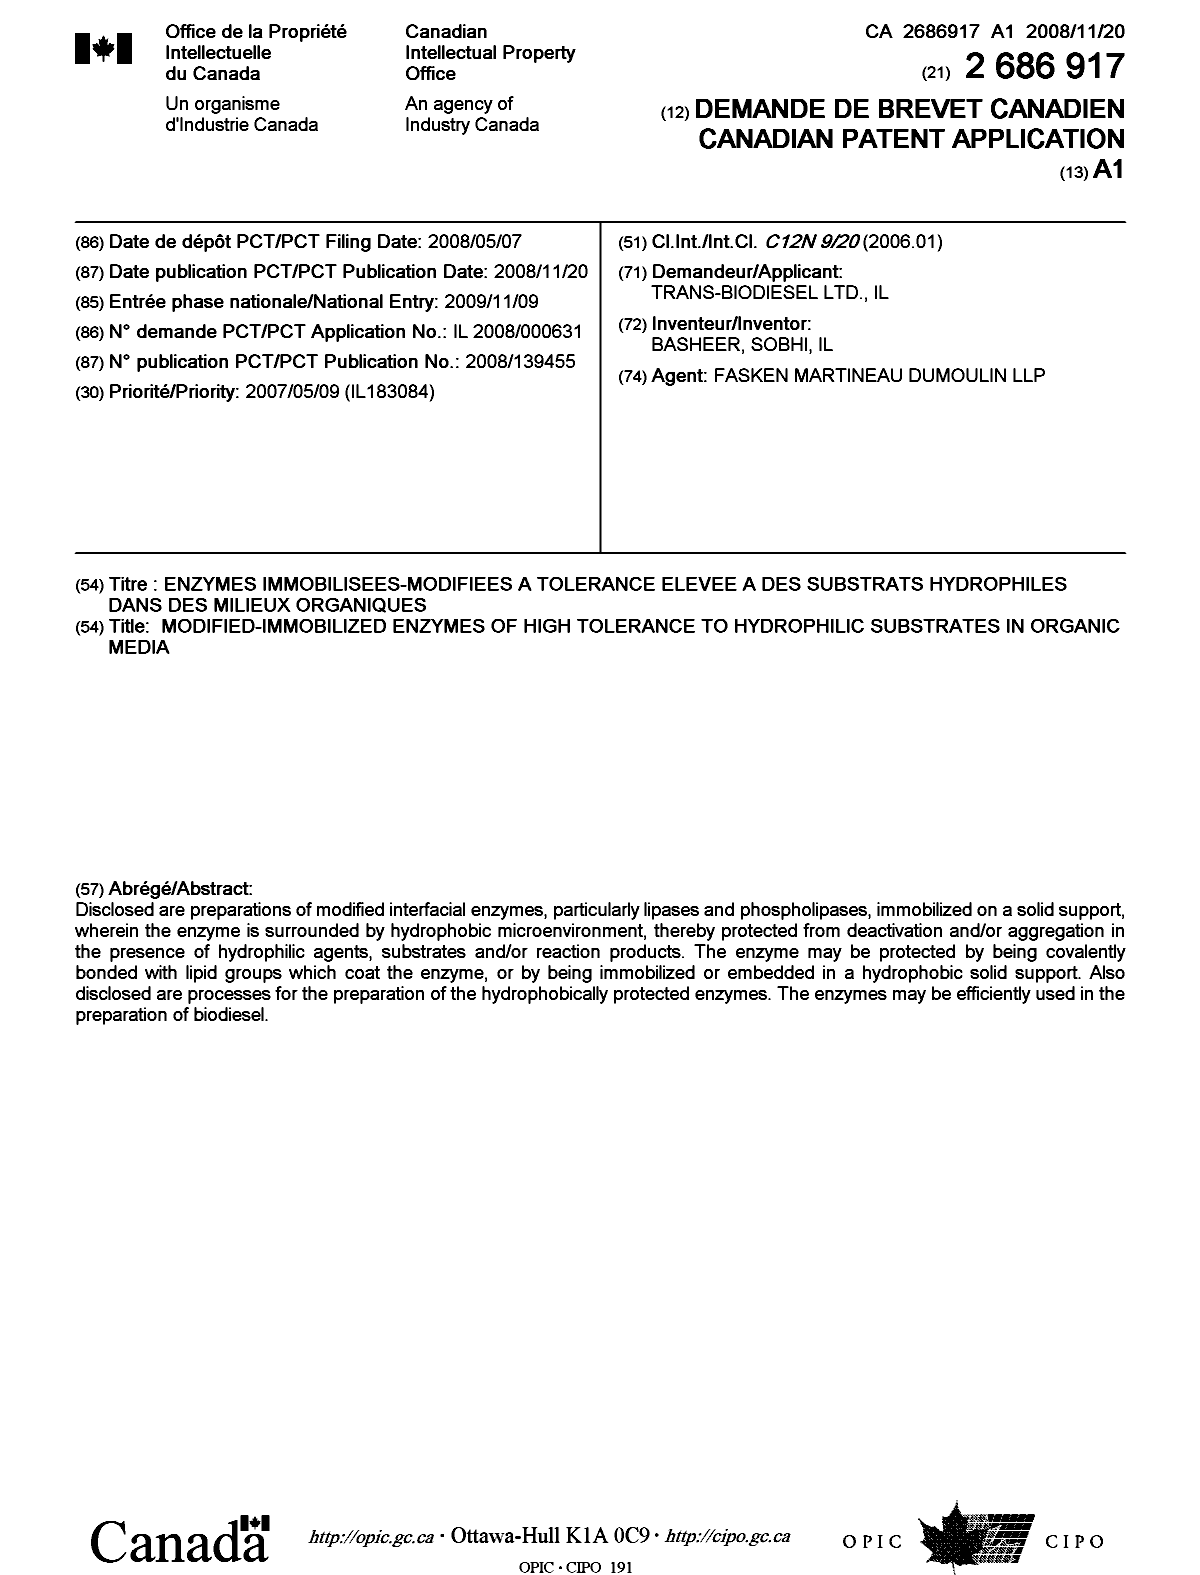 Document de brevet canadien 2686917. Page couverture 20100112. Image 1 de 1